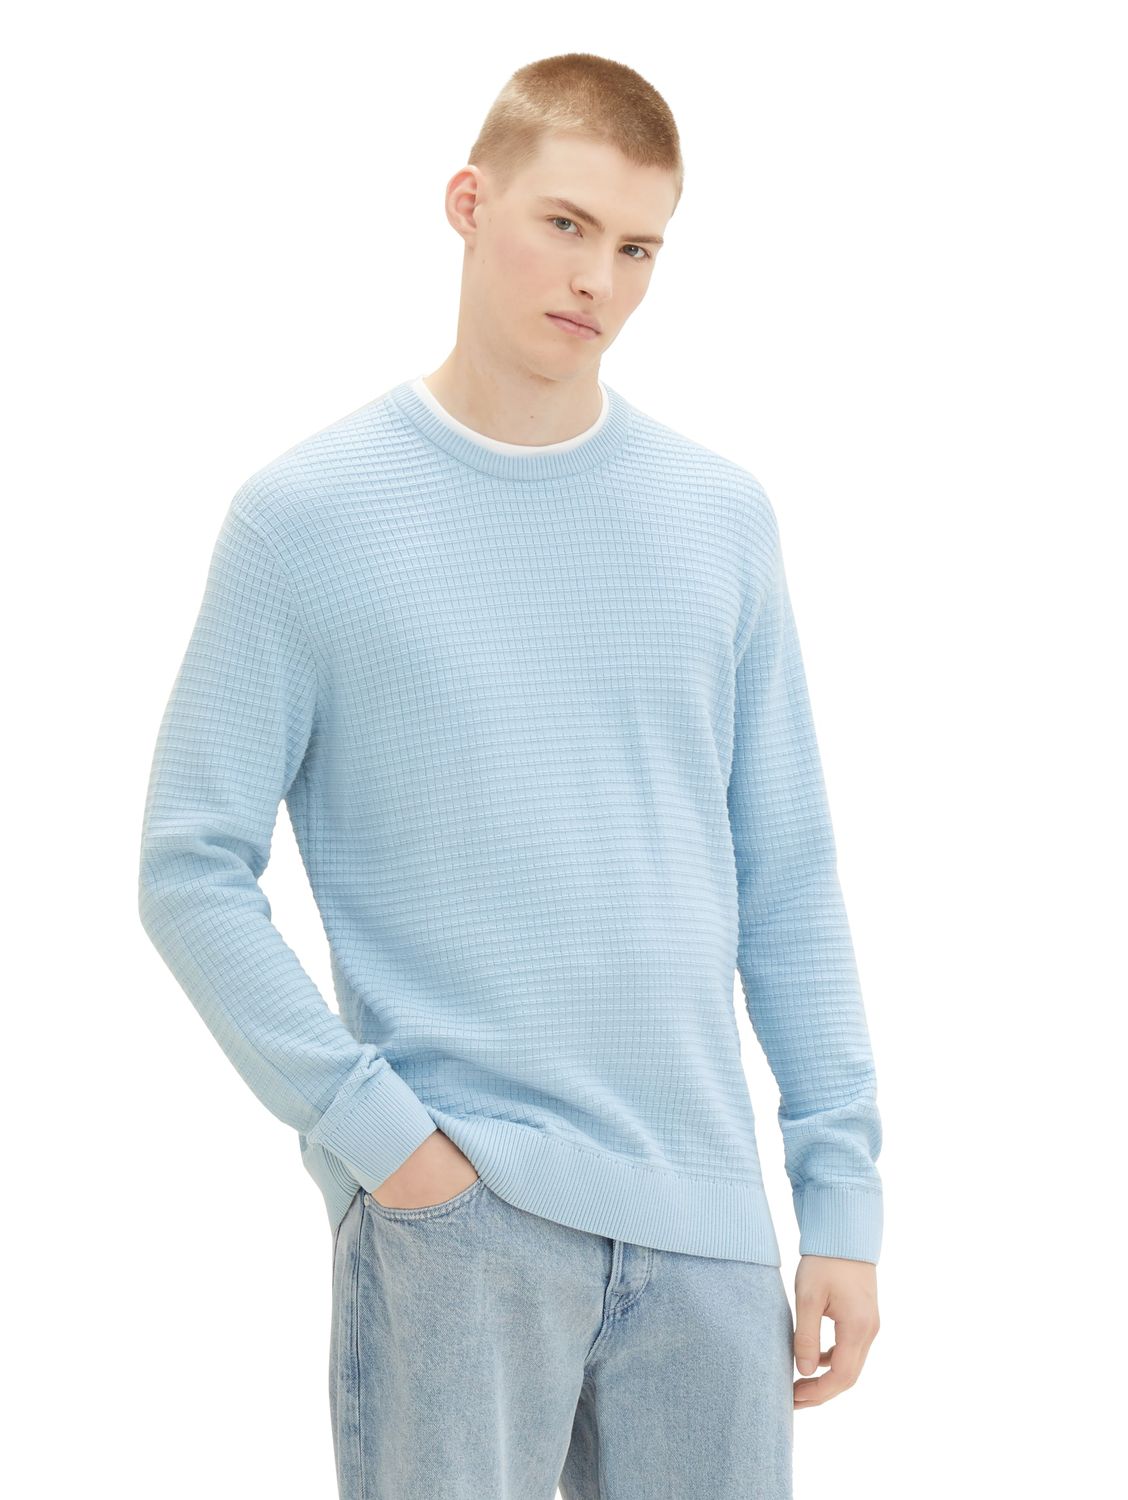 Пуловер TOM TAILOR Denim STRUCTURED DOUBLELAYER, синий пуловер tom tailor denim structured doublelayer серый